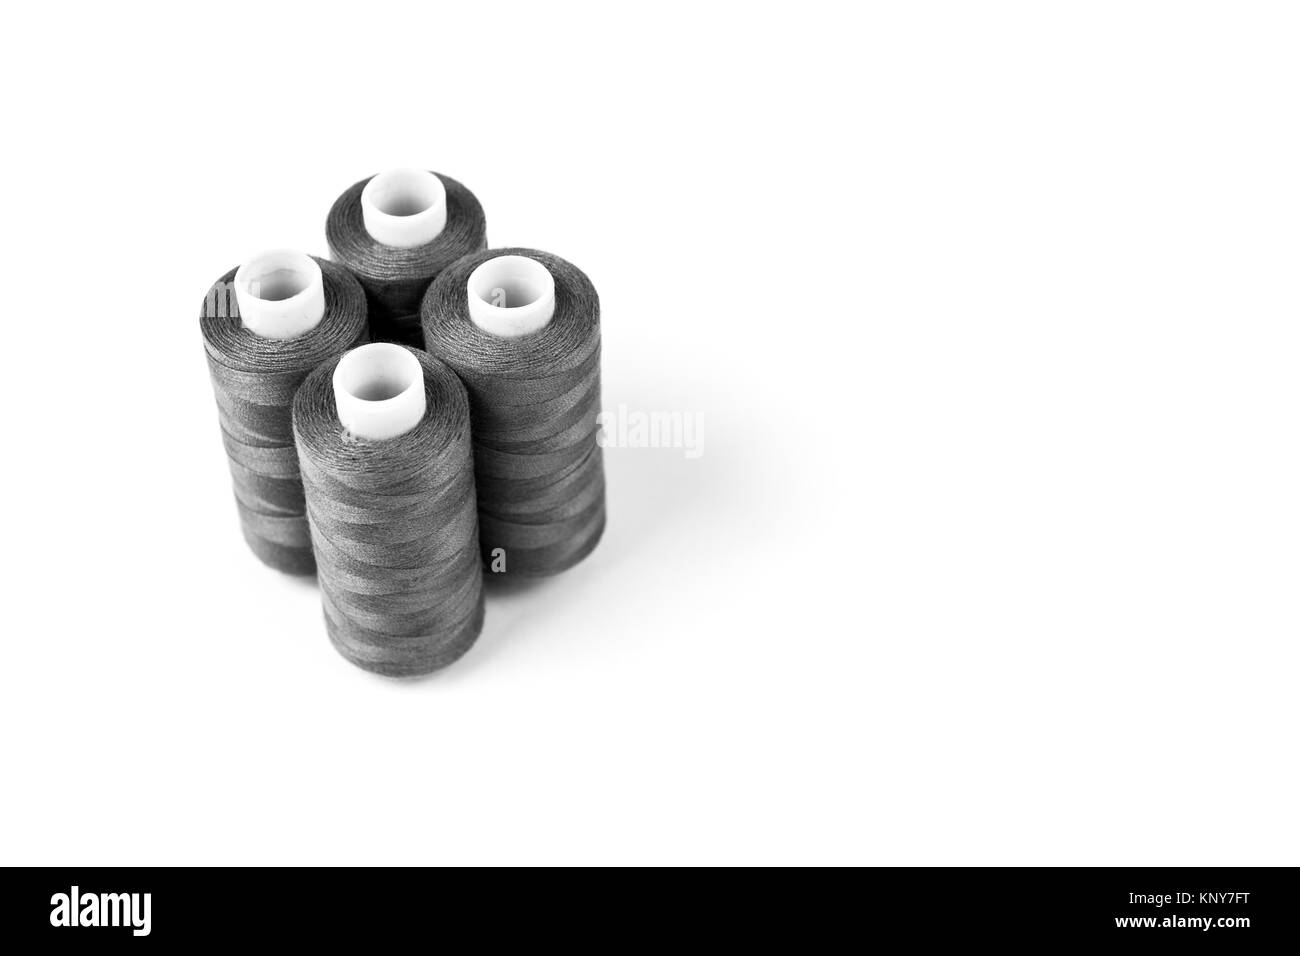 Schwarze und weiße Sewing Threads auf einem weißen Hintergrund. Satz von nähfäden Stockfoto